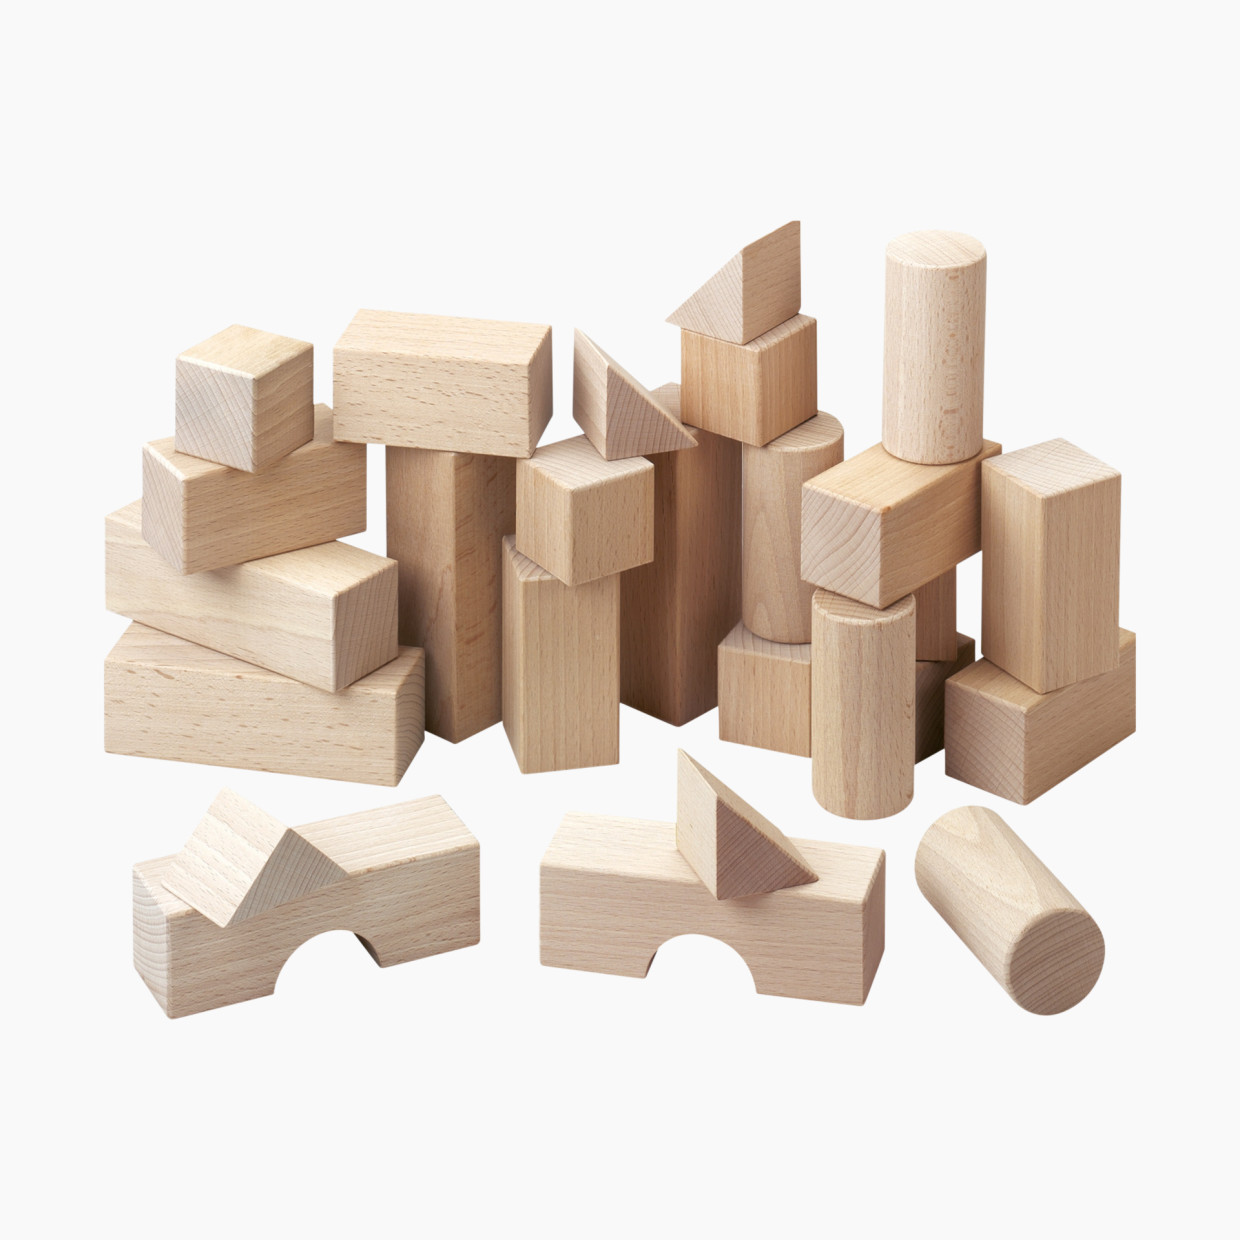 HABA 26 Piece Wooden Blocks Starter Set.